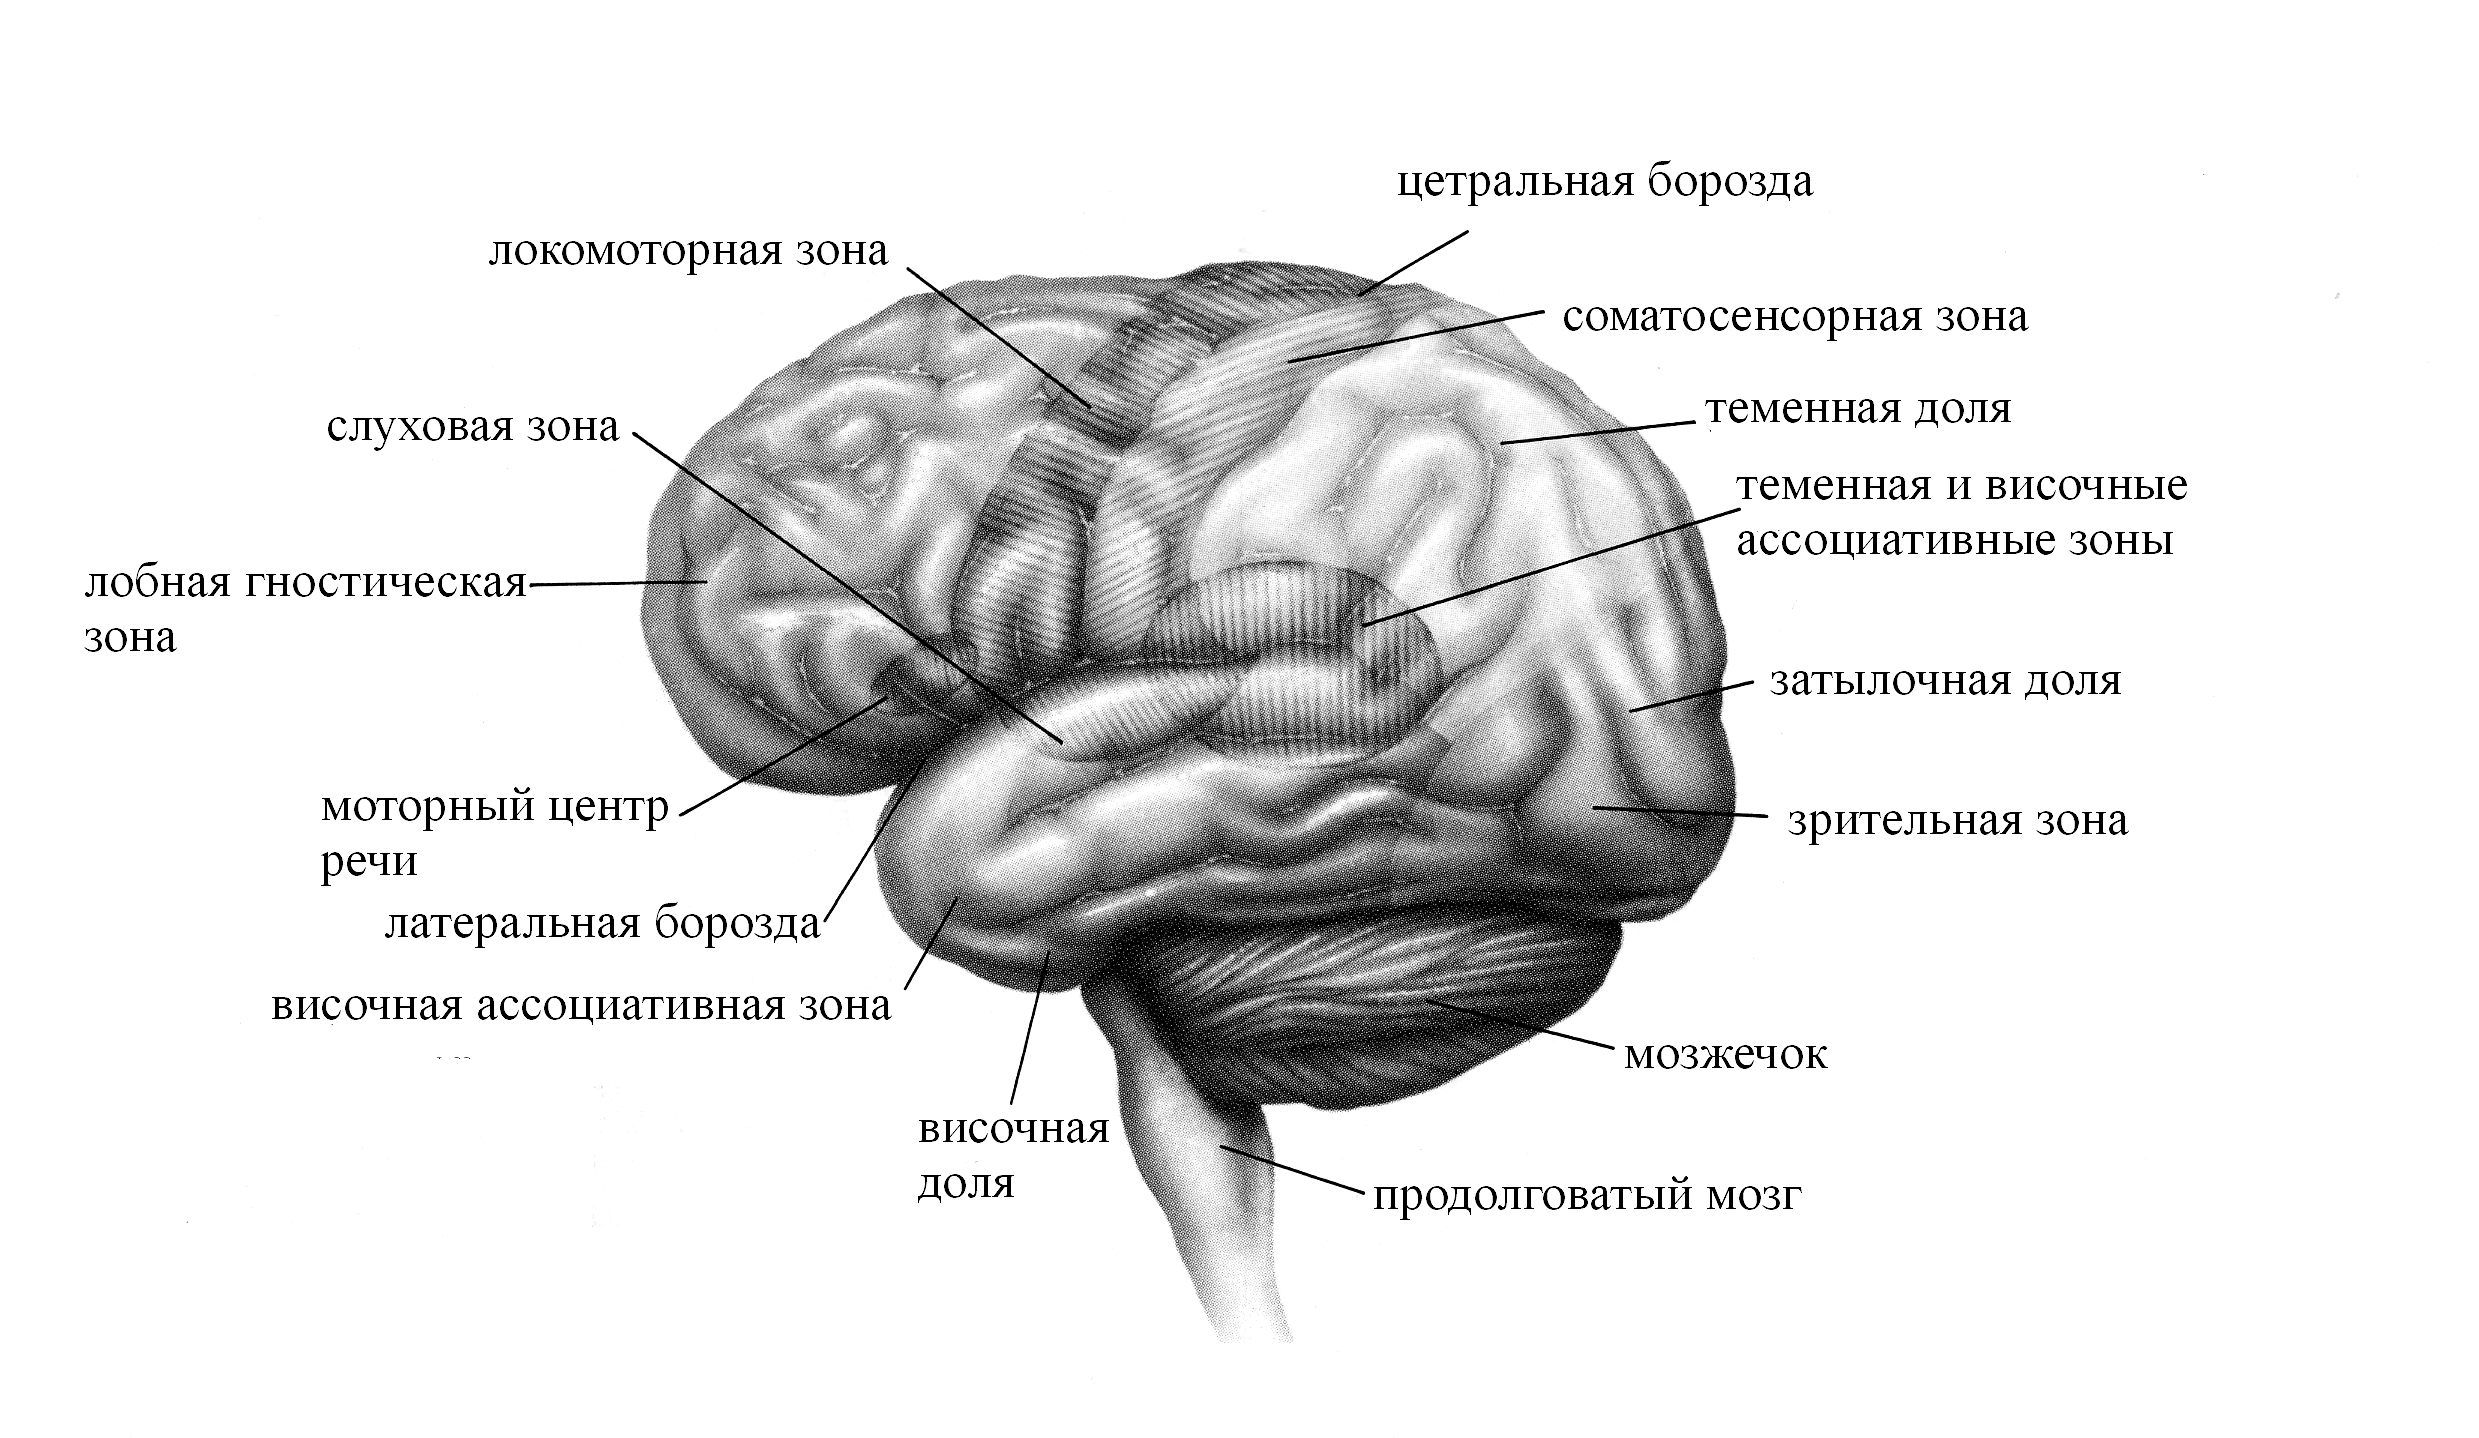 Теменная зона коры мозга. Борозды головной мозга теменной доле. Функциональные центры теменной доли. Функциональные зоны коры головного мозга Центральная борозда.